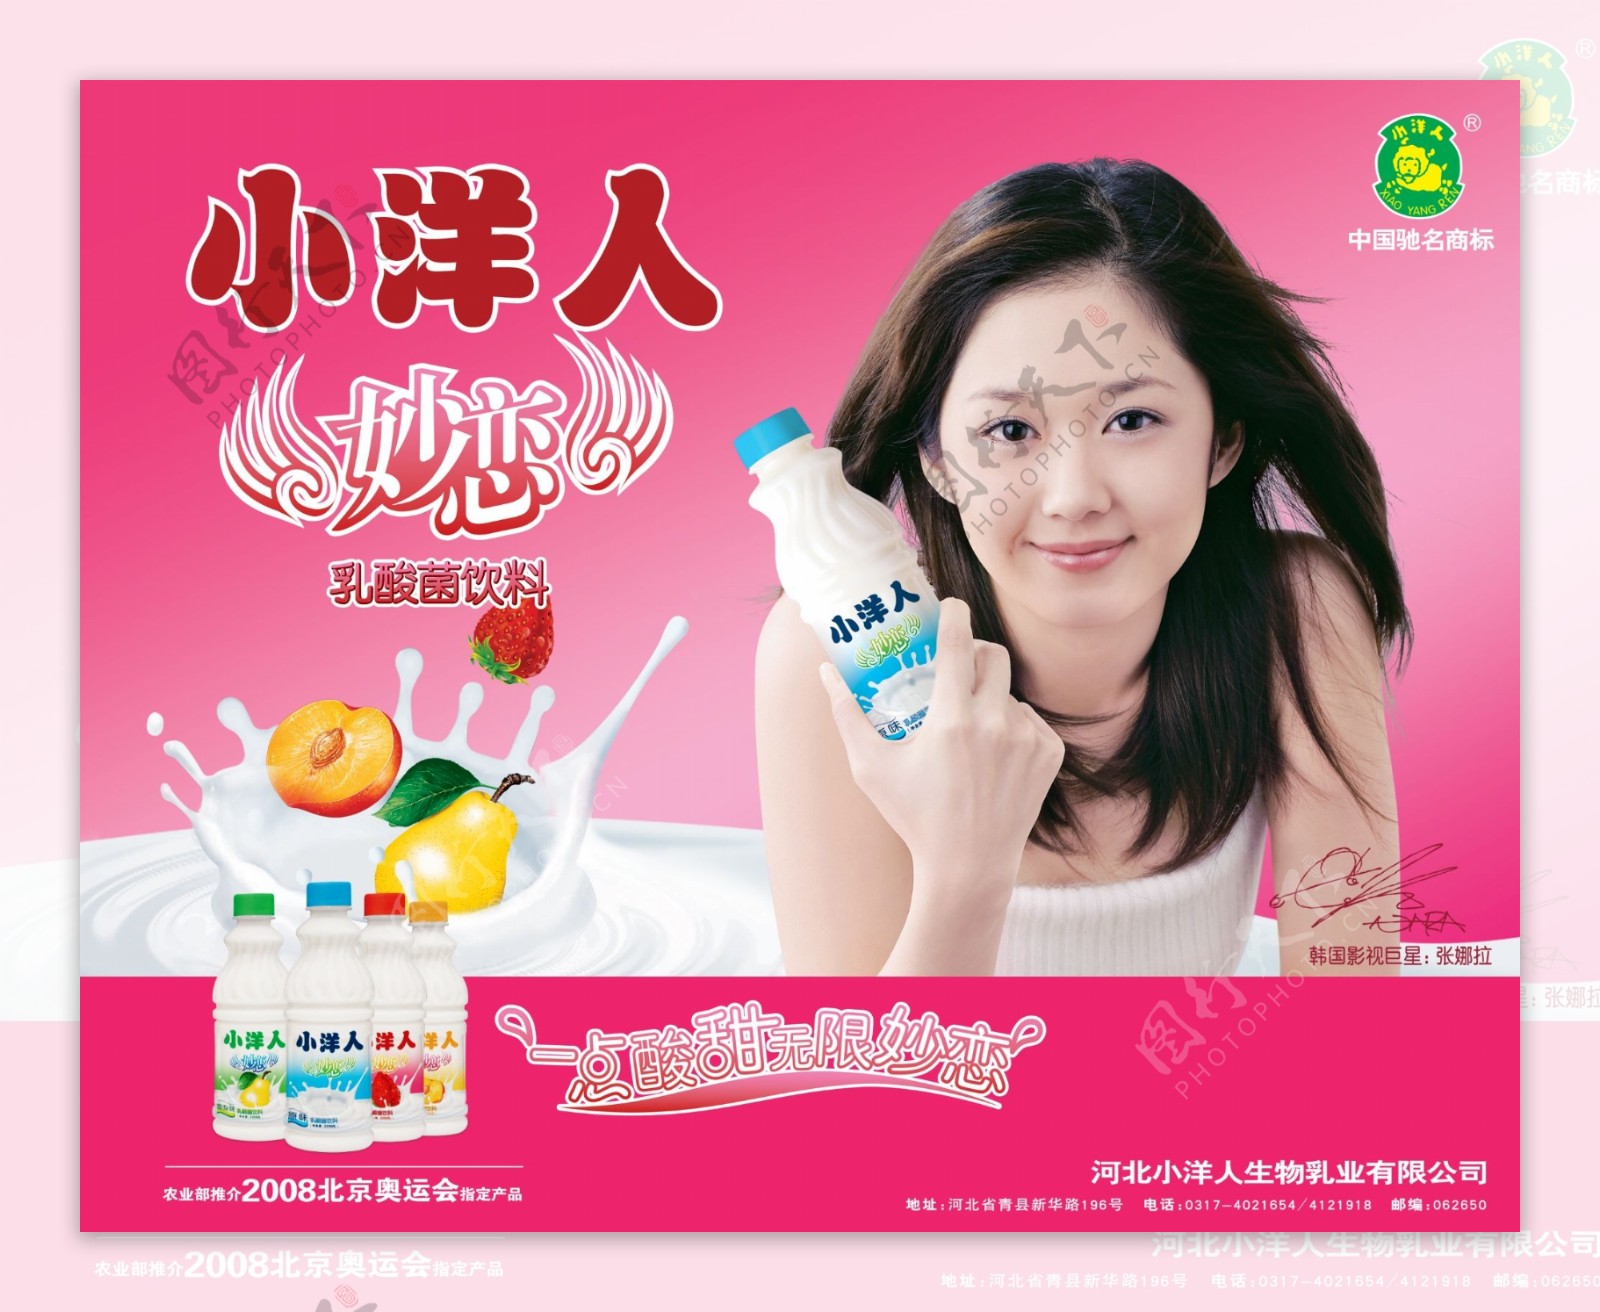 龙腾广告平面广告PSD分层素材源文件食品小洋人乳酸菌饮料